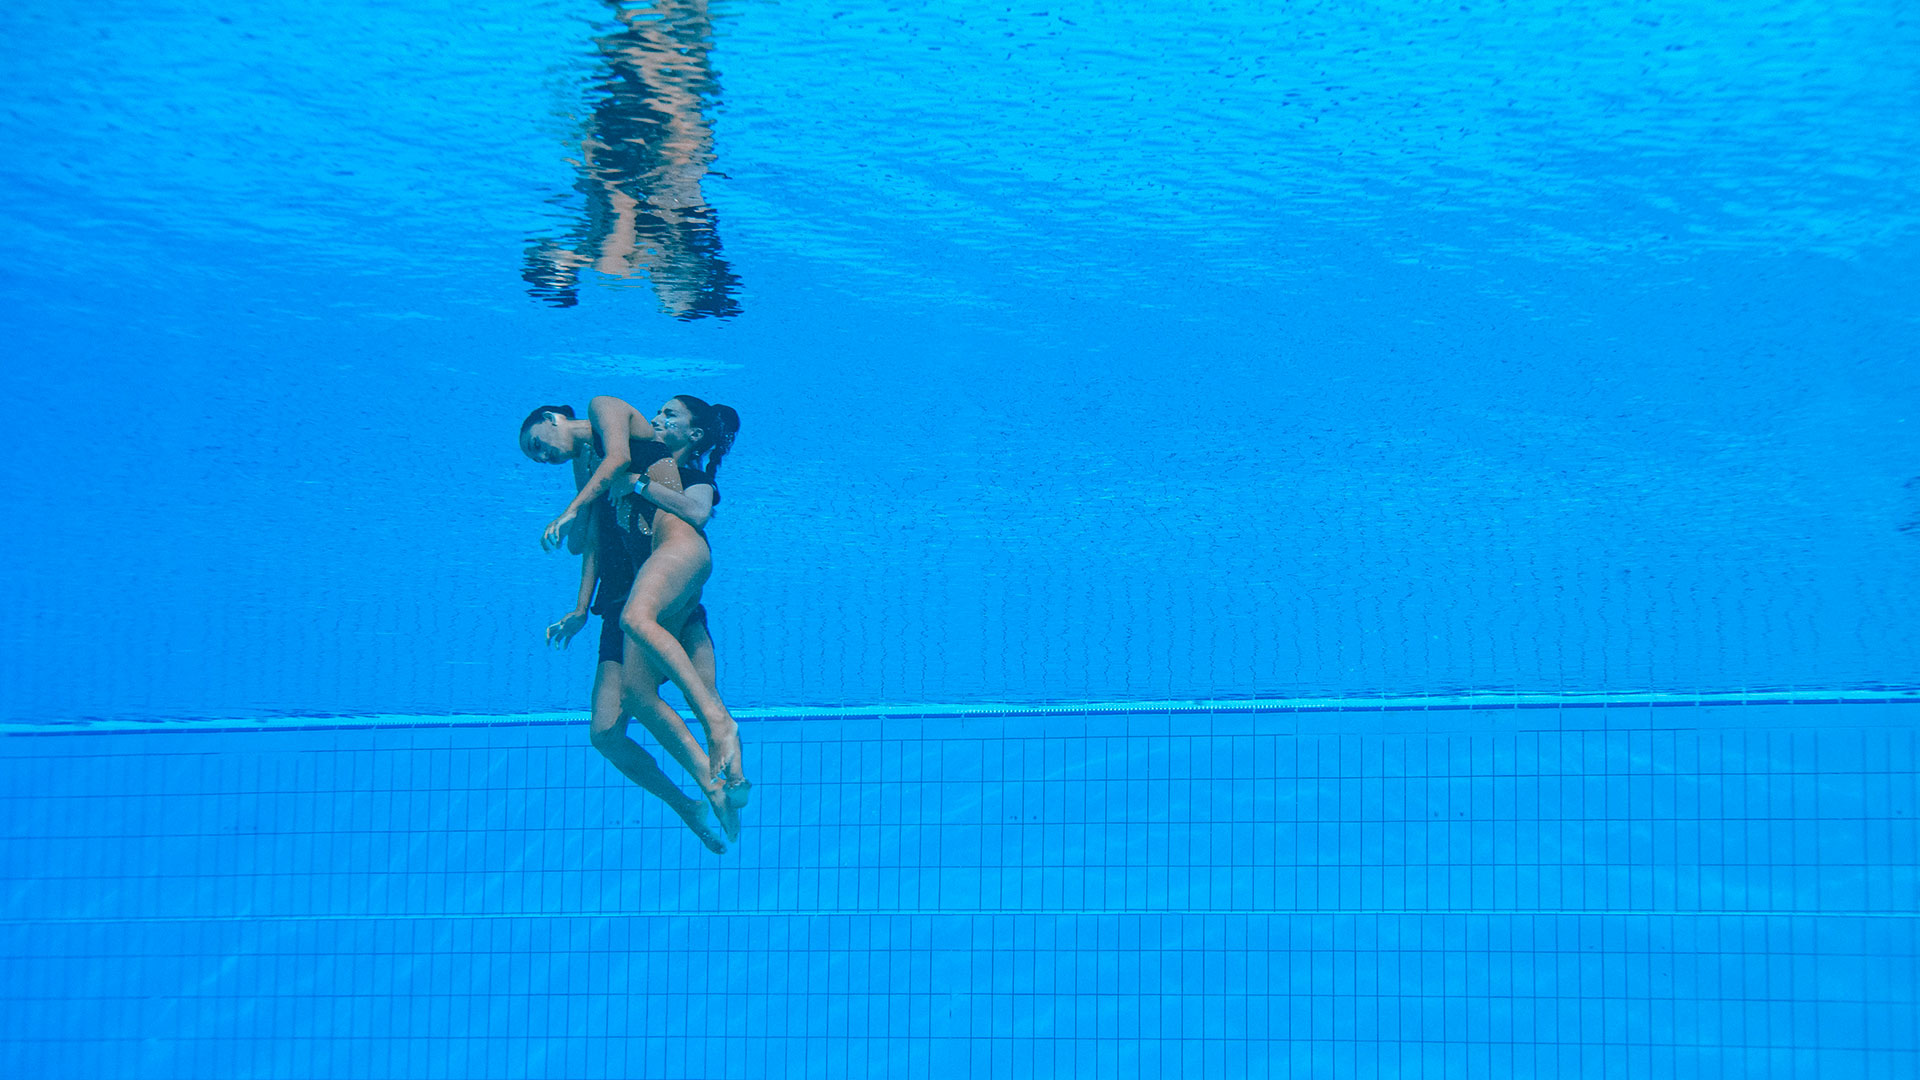 La entrenadora se tiró a la pileta para rescatar a la nadadora de su equipo (AFP)
